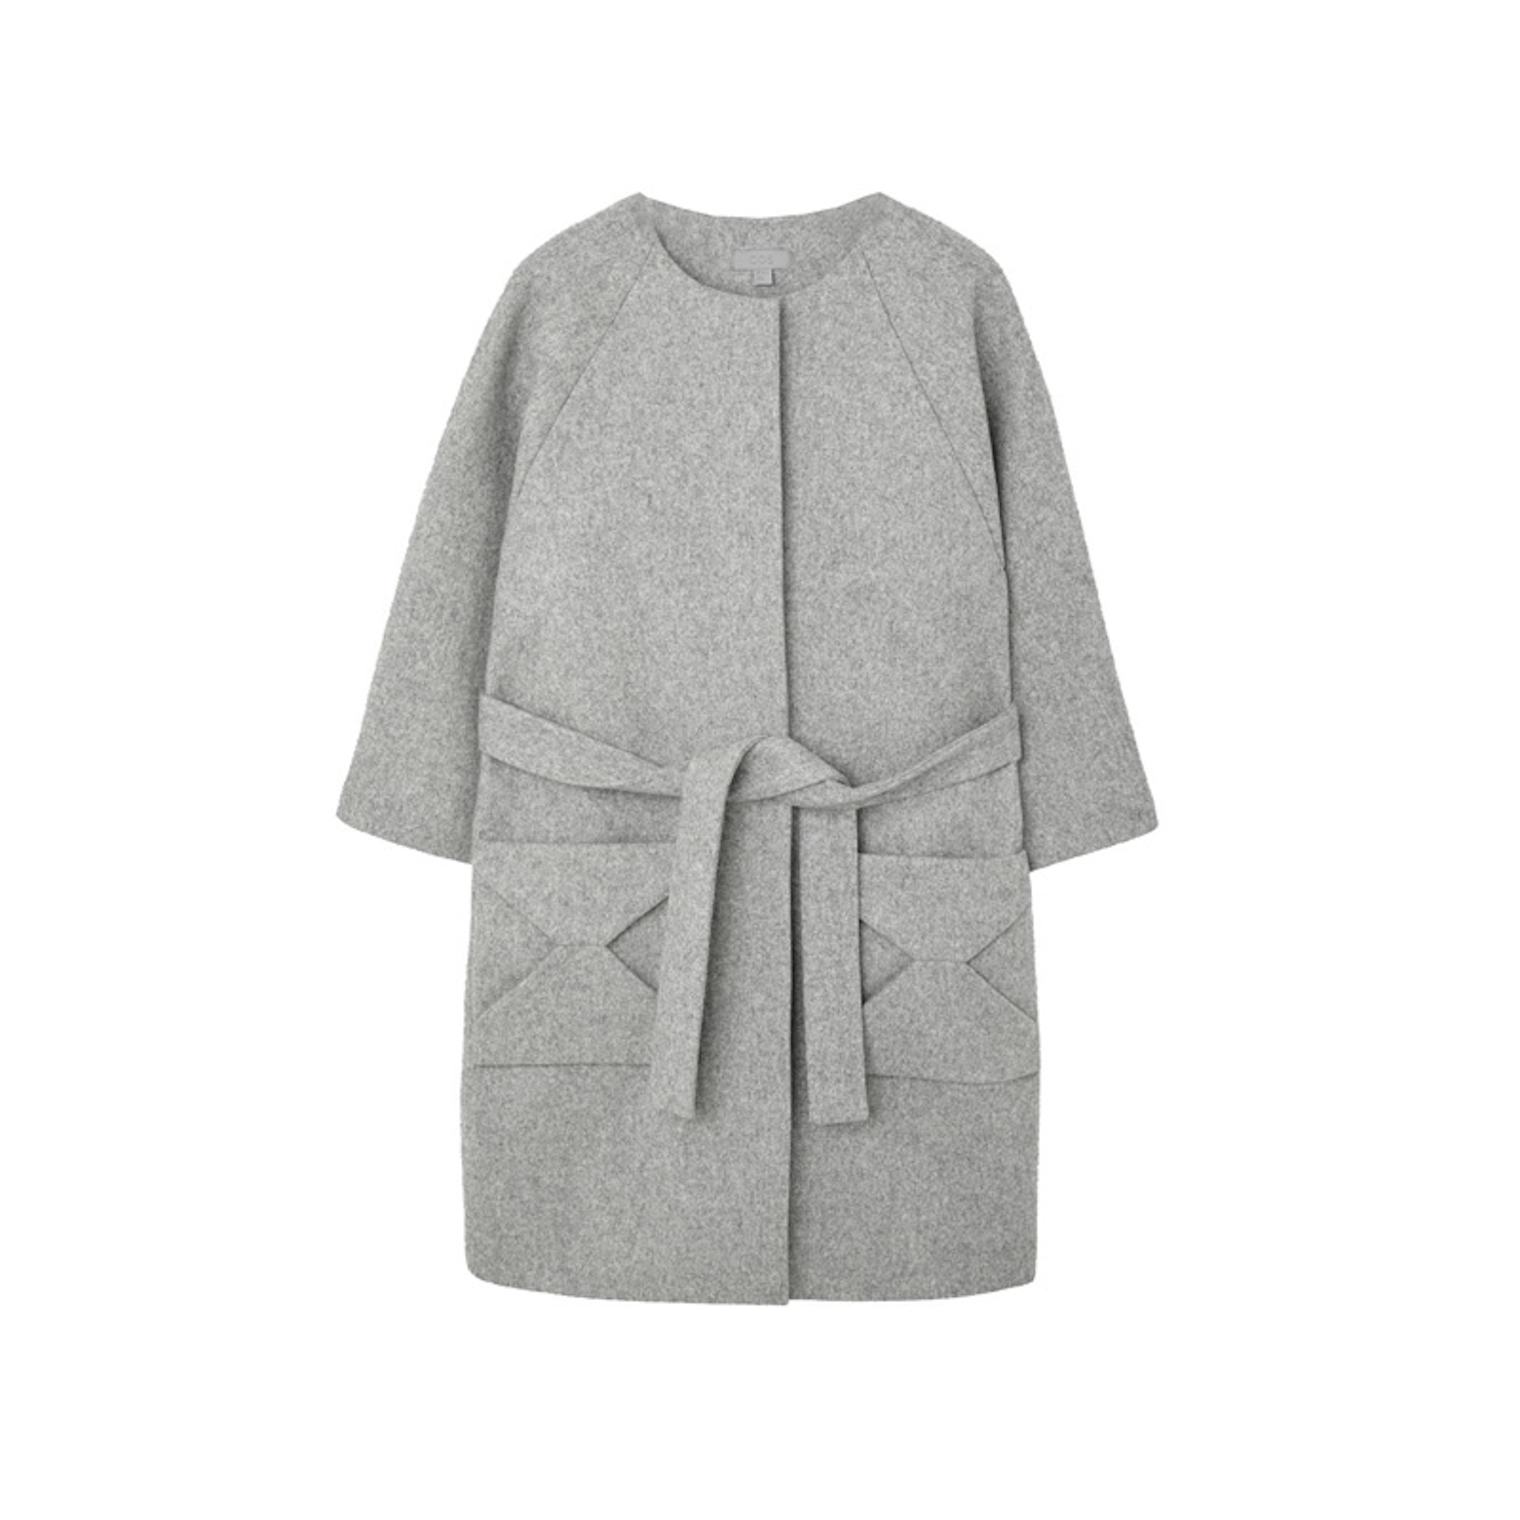 11 Stylish Coats For Under $300